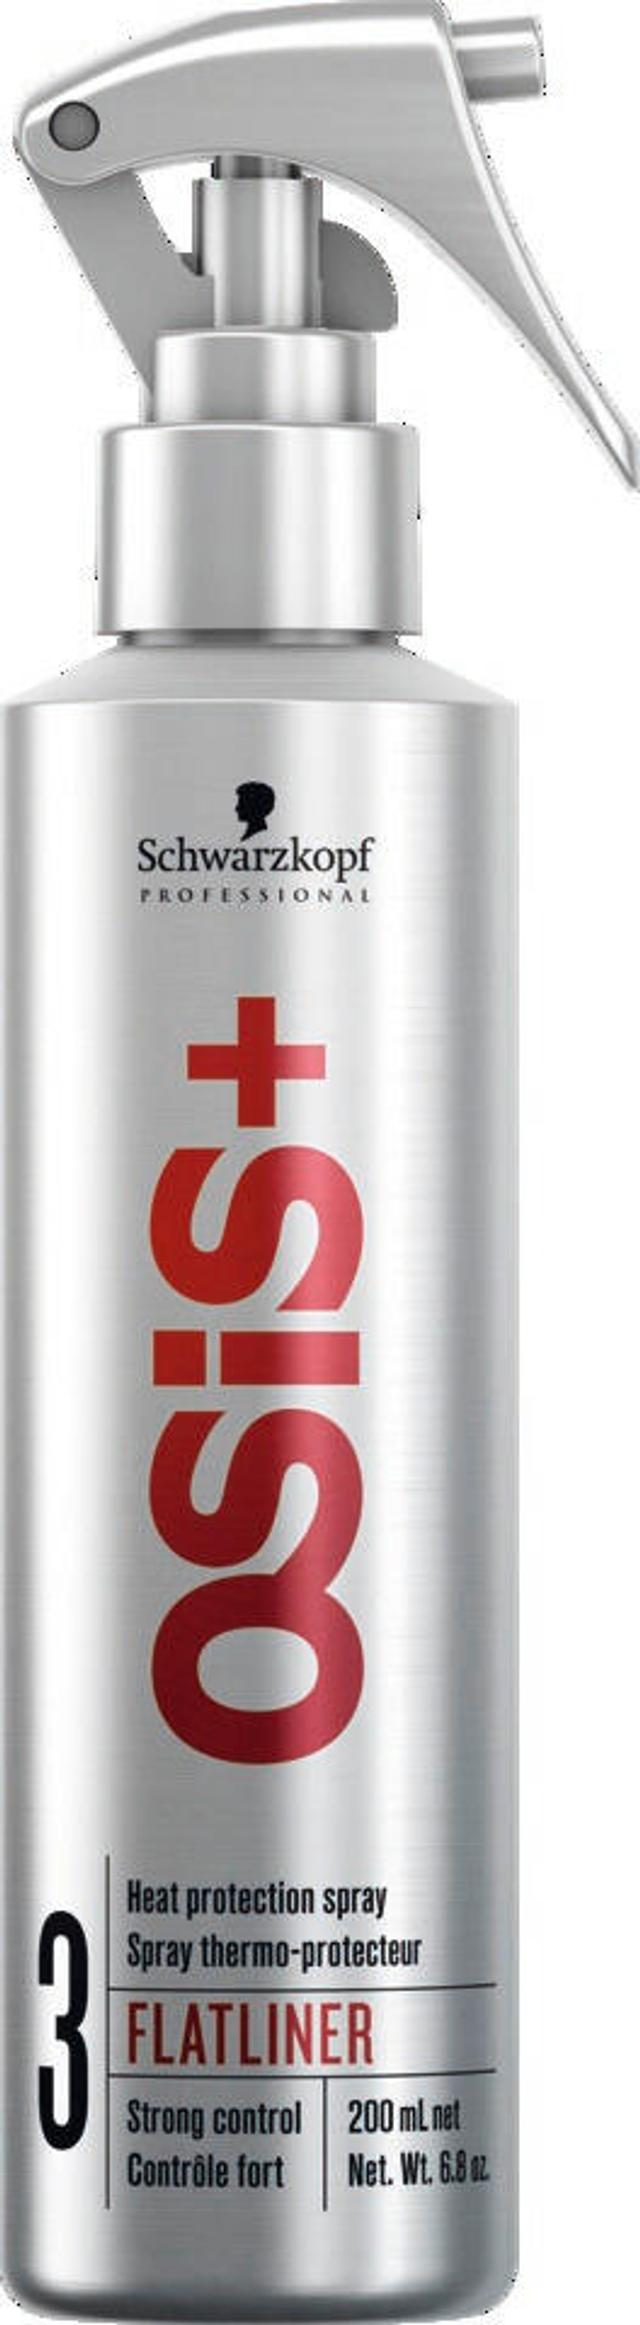 Osis+ flatliner heat protection spray suoristusrautaseerumi 200 ml